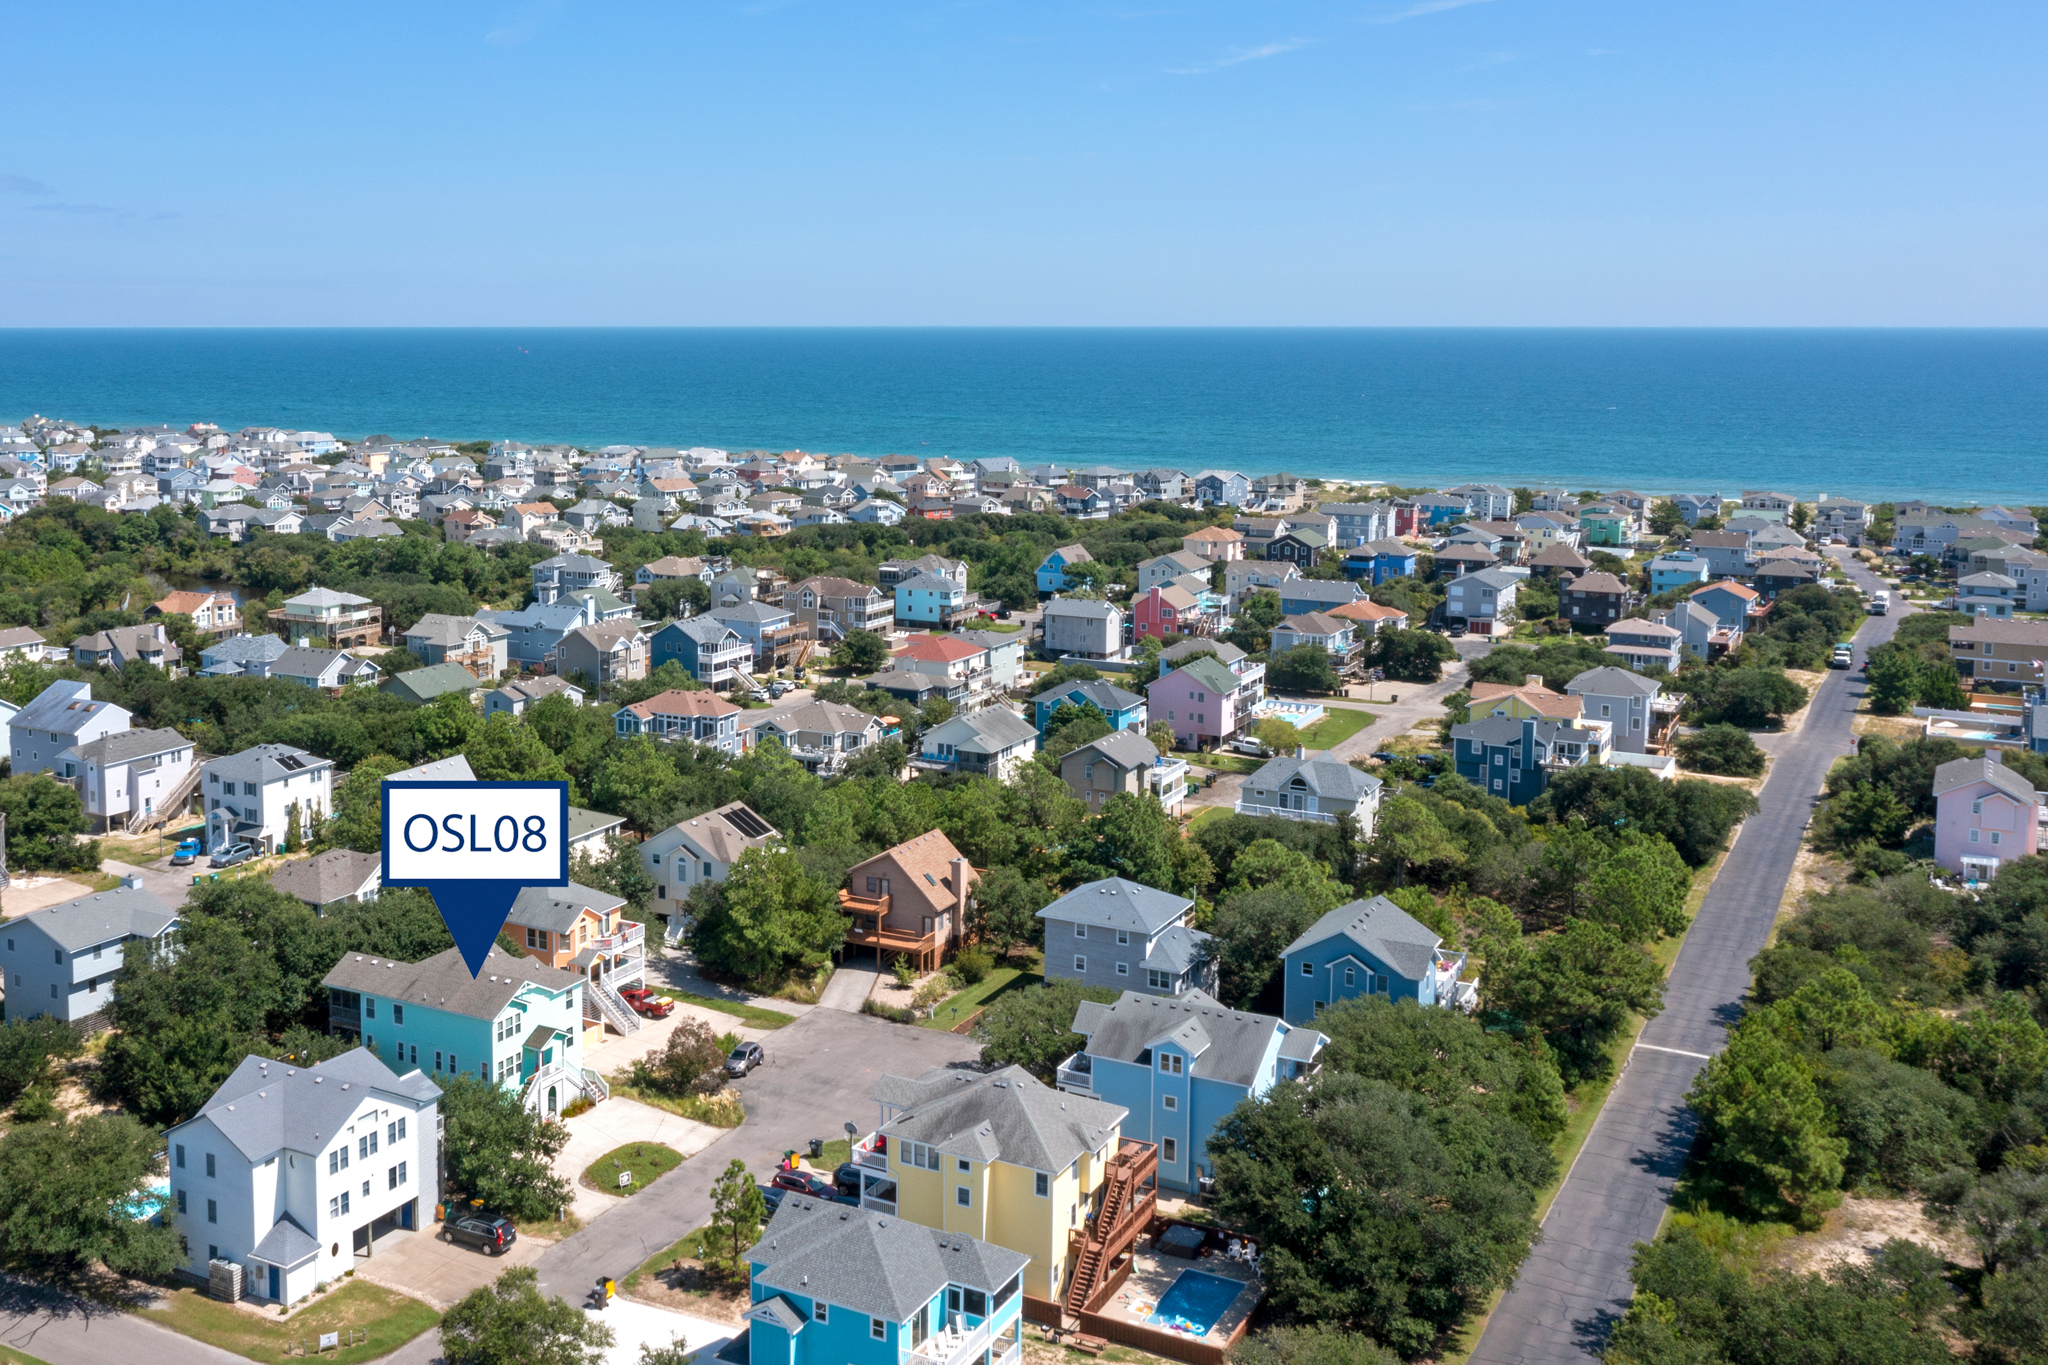 OSL08: Summersalt | Aerial View